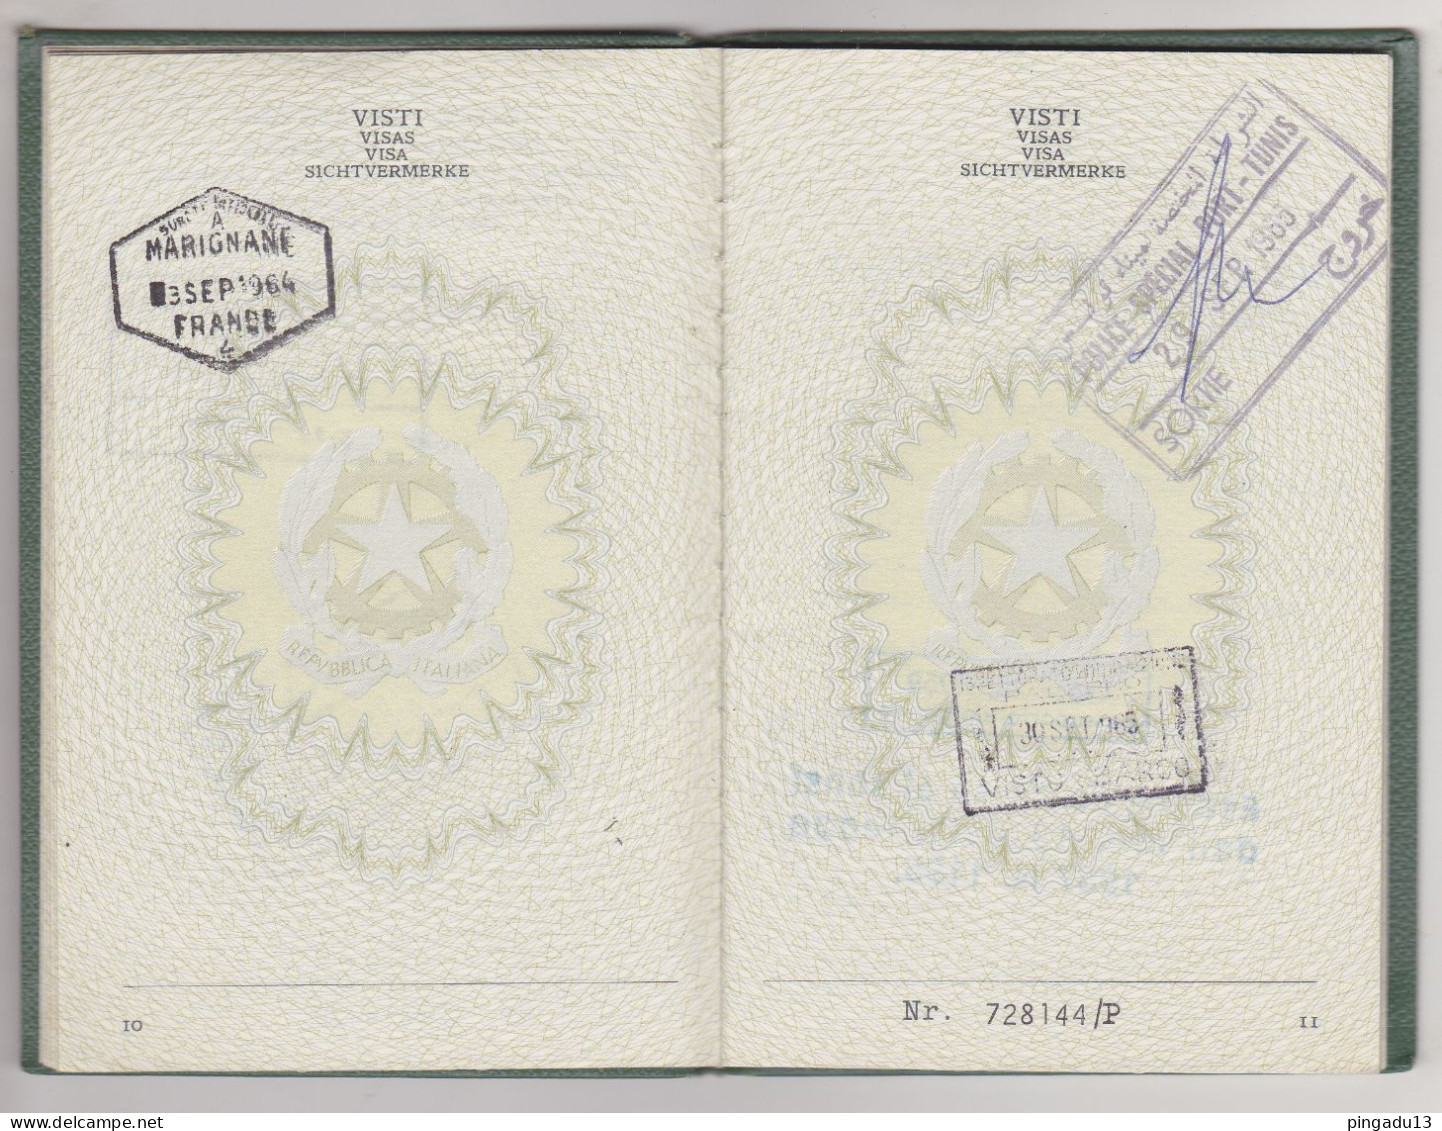 Passaporto Residente in Tunisia Marca consolare gratuita Concessione gratuita del passaporto 14 mai 1963 Tunis